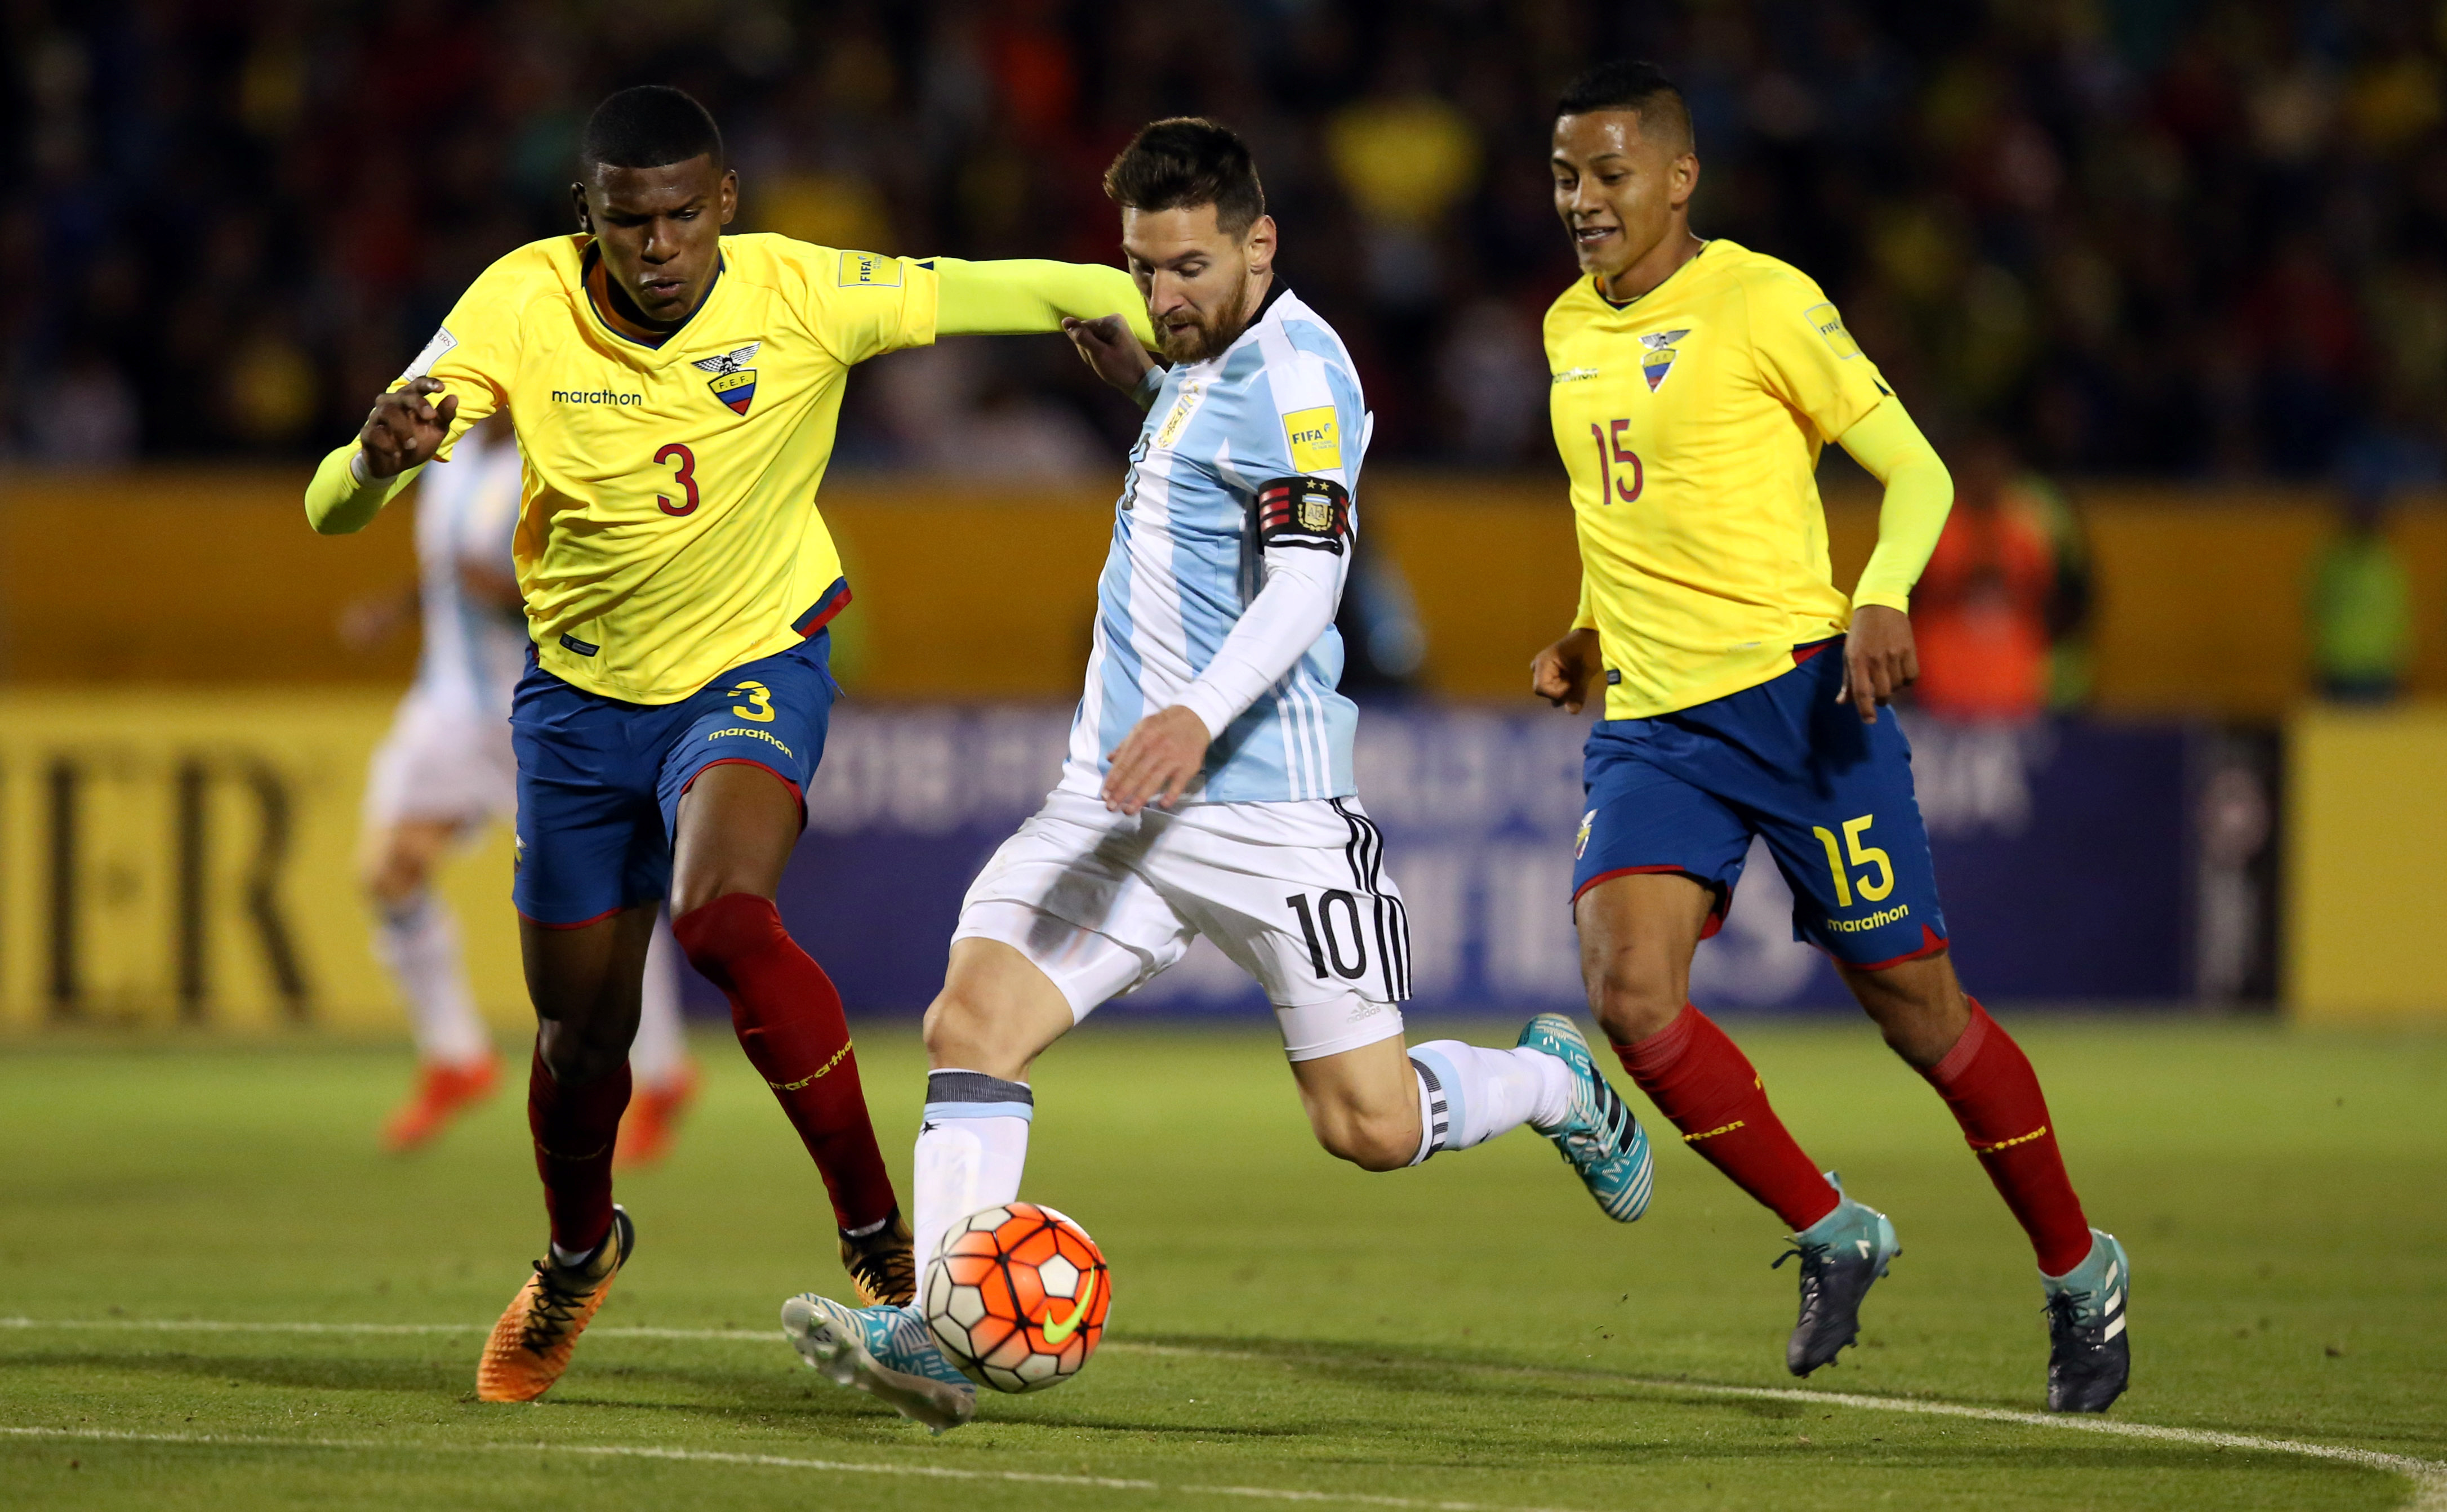 Siempre encontramos la forma de volver más fuertes: El mensaje de Messi a los argentinos previo al inicio de eliminatorias